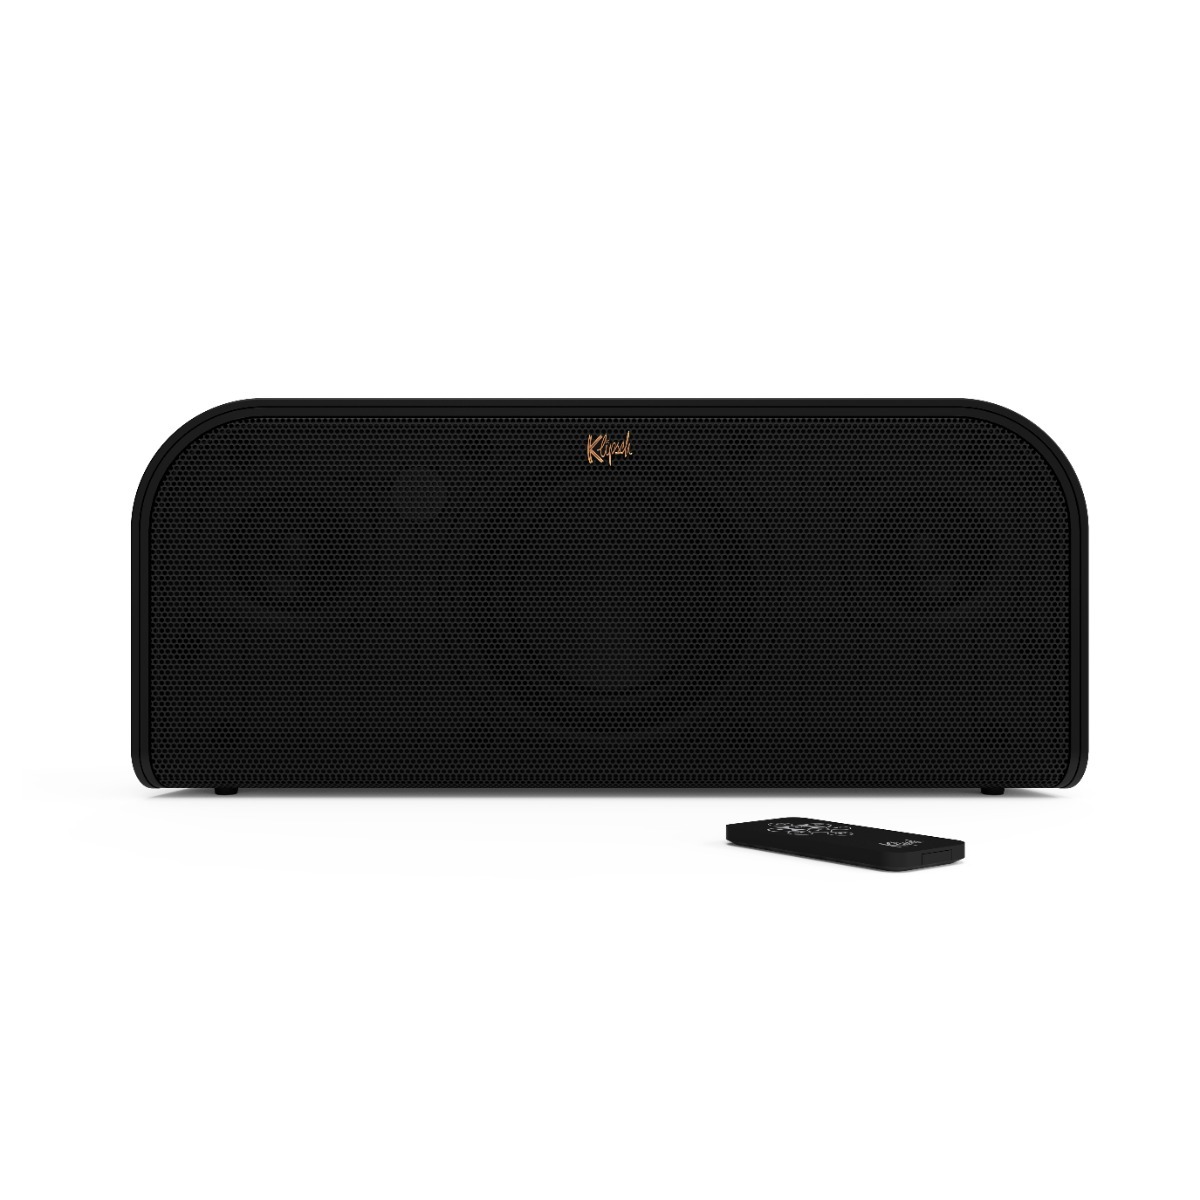 Klipsch Bluetooth speakers > Draadloze speakers > Klipsch > Aanbiedingen > Draadloze speakers > Merken